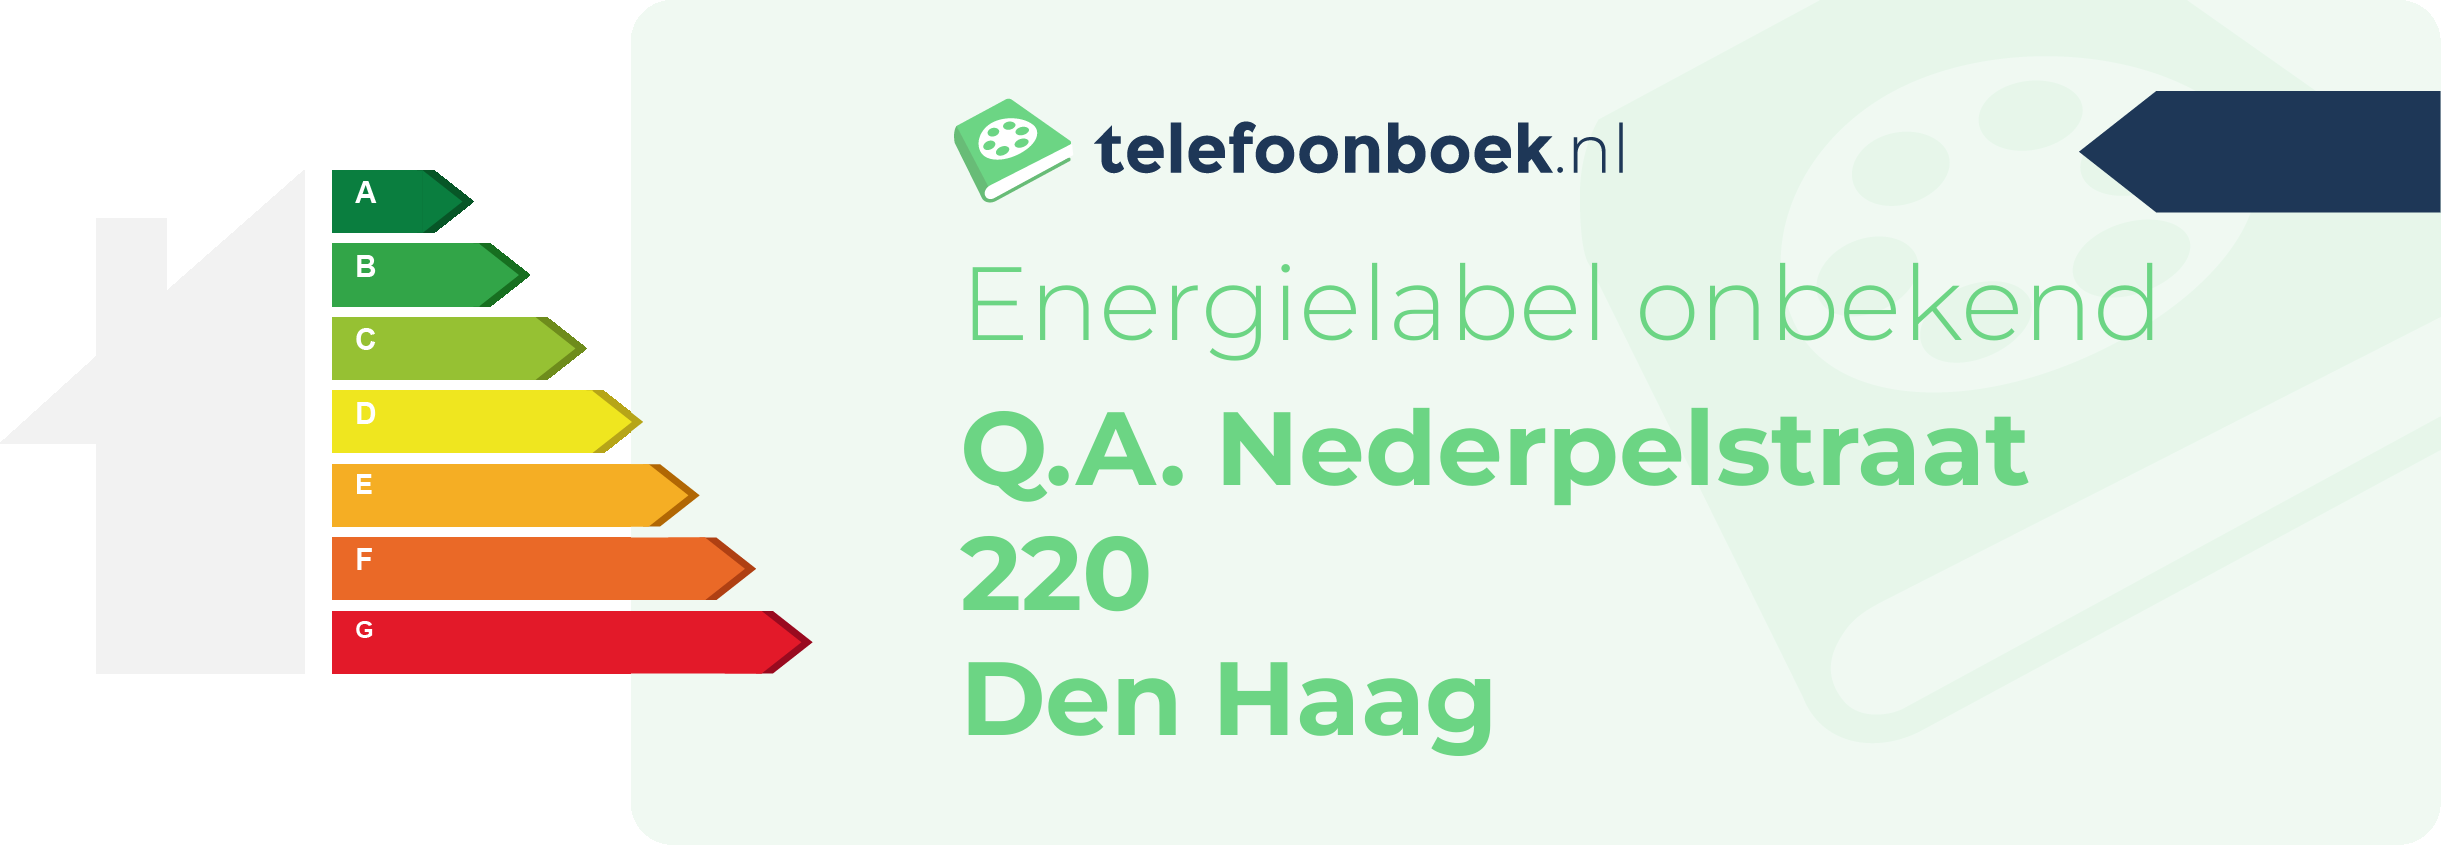 Energielabel Q.A. Nederpelstraat 220 Den Haag